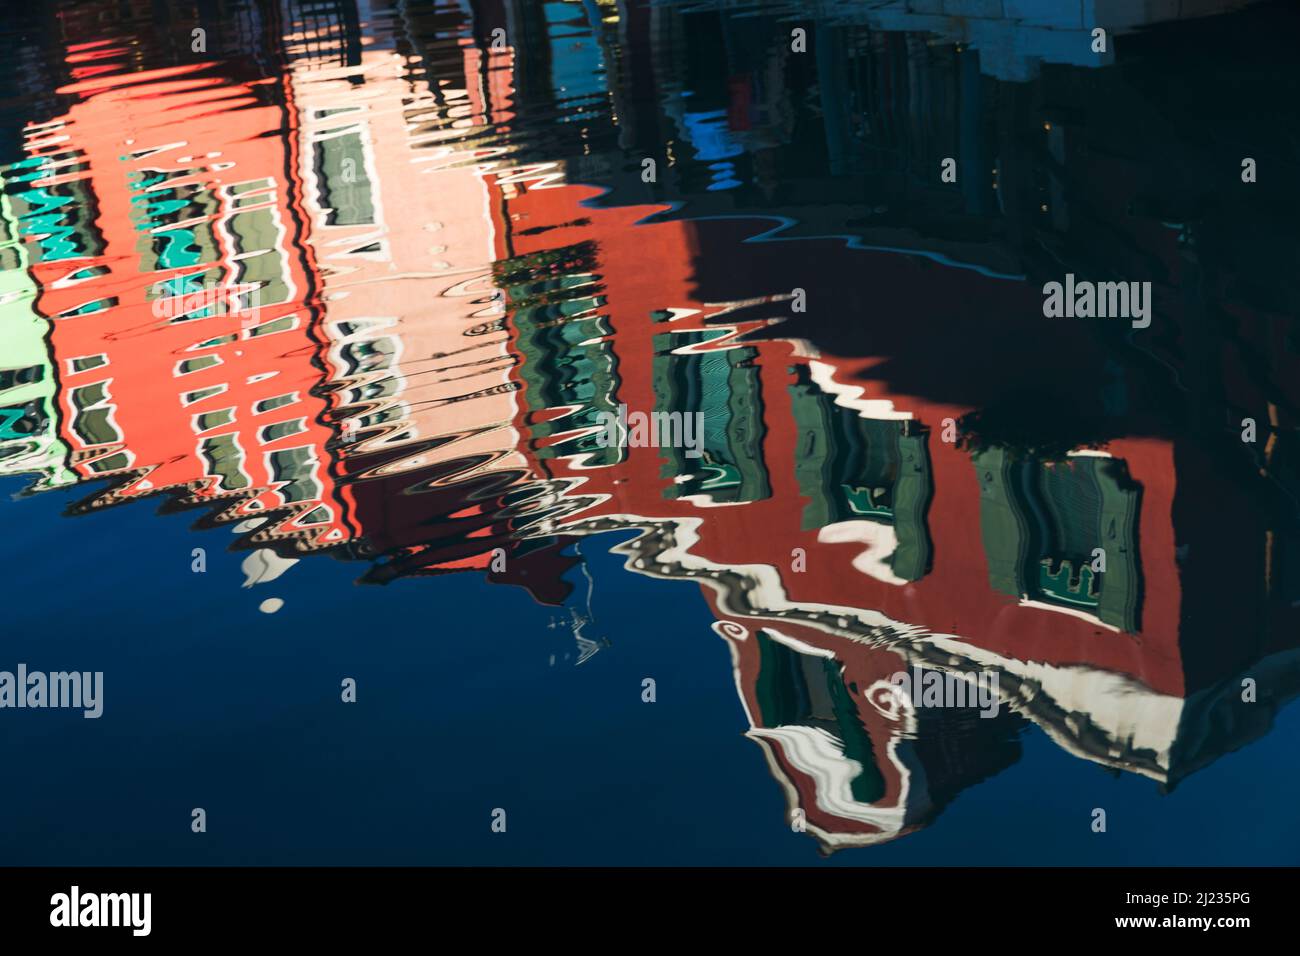 aly, Venezia, case colorate sull'isola veneziana di Burano che si riflettono su un canale Foto Stock